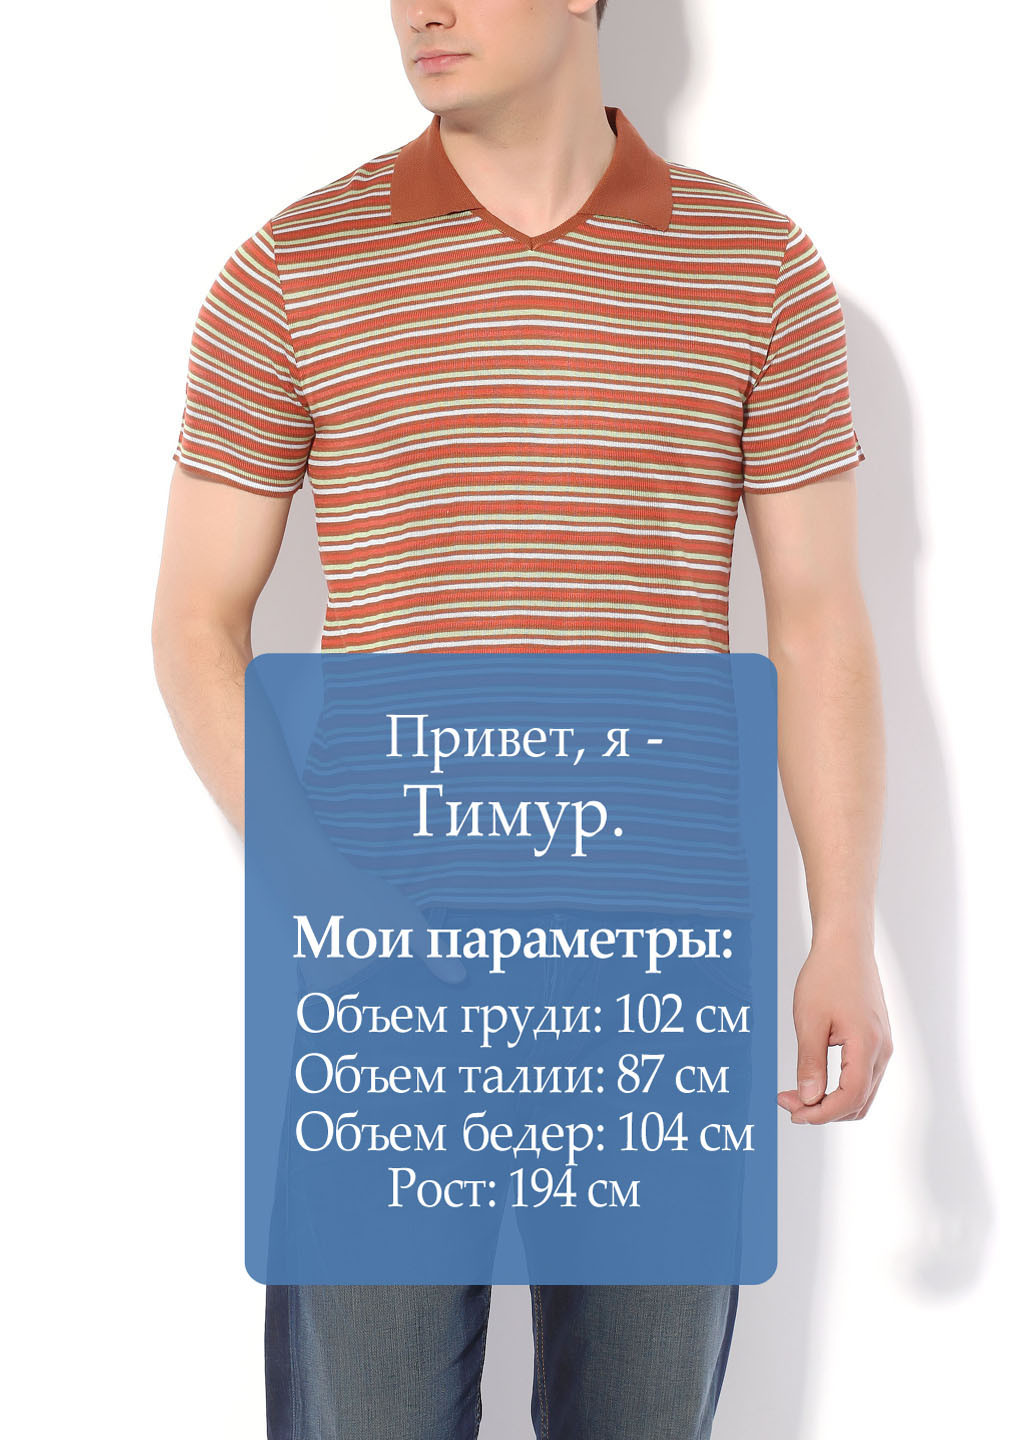 Терракотовая футболка-поло для мужчин Flash